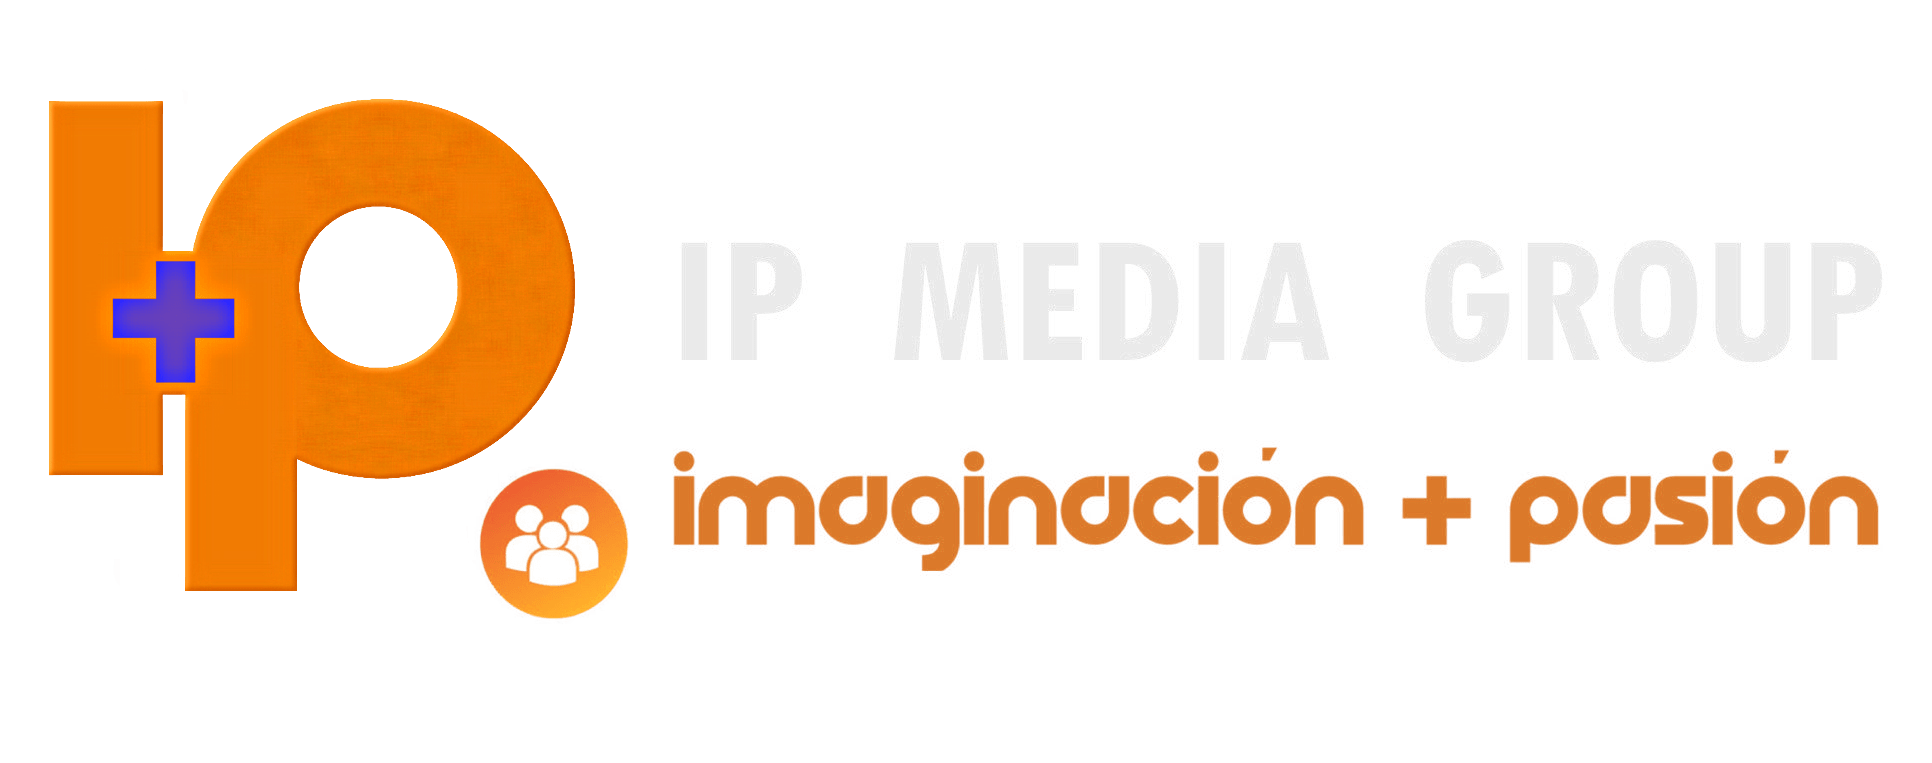 IP Media Group realizó el lanzamiento de “IP Magazine”